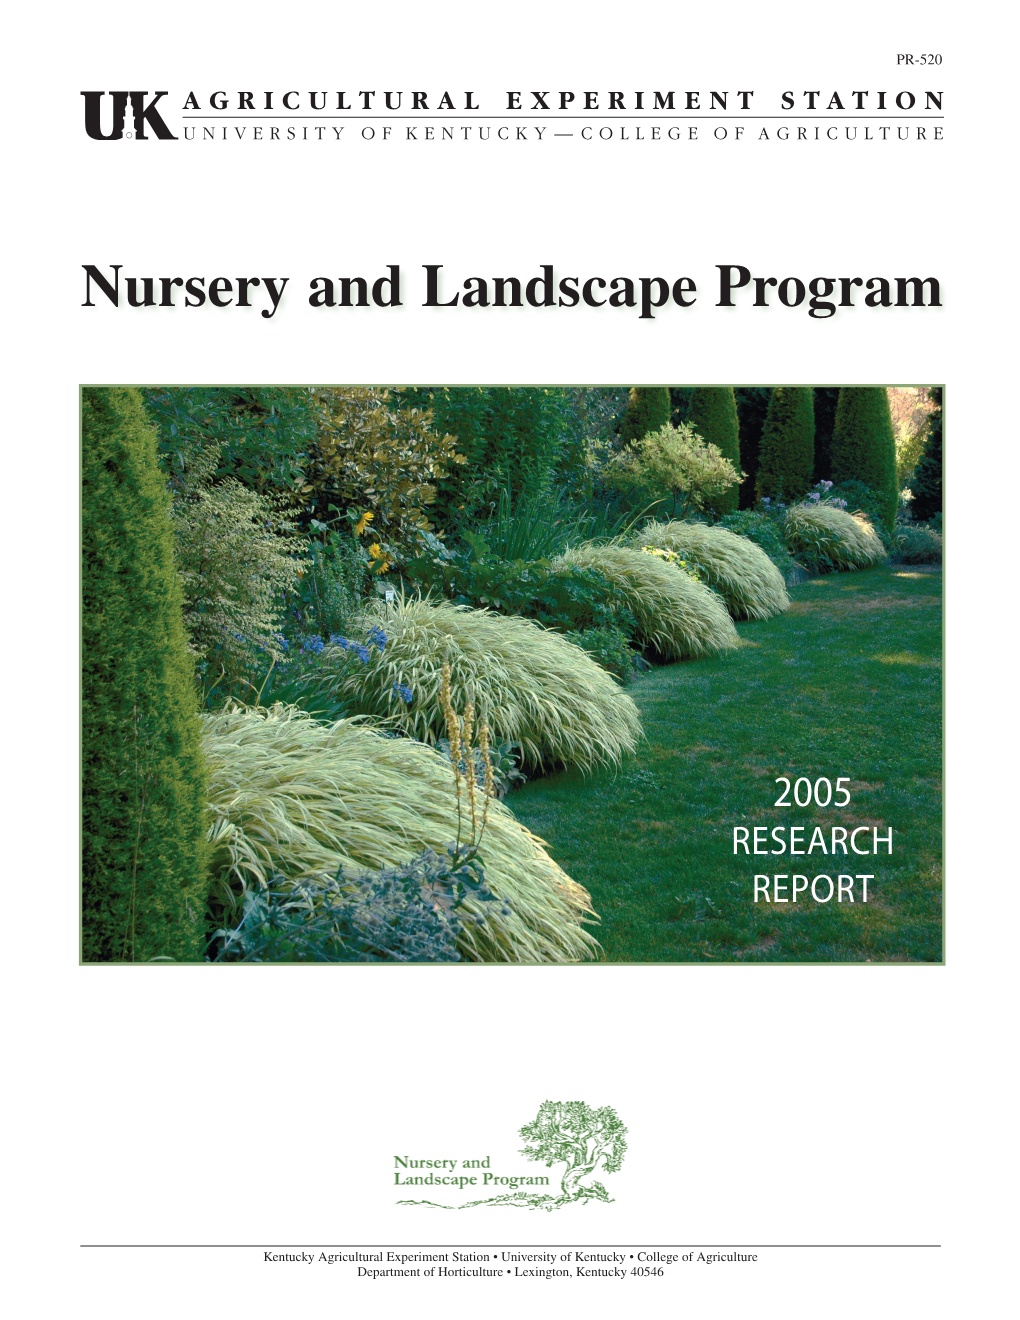 PR-520: UK Nursery and Landscape Program